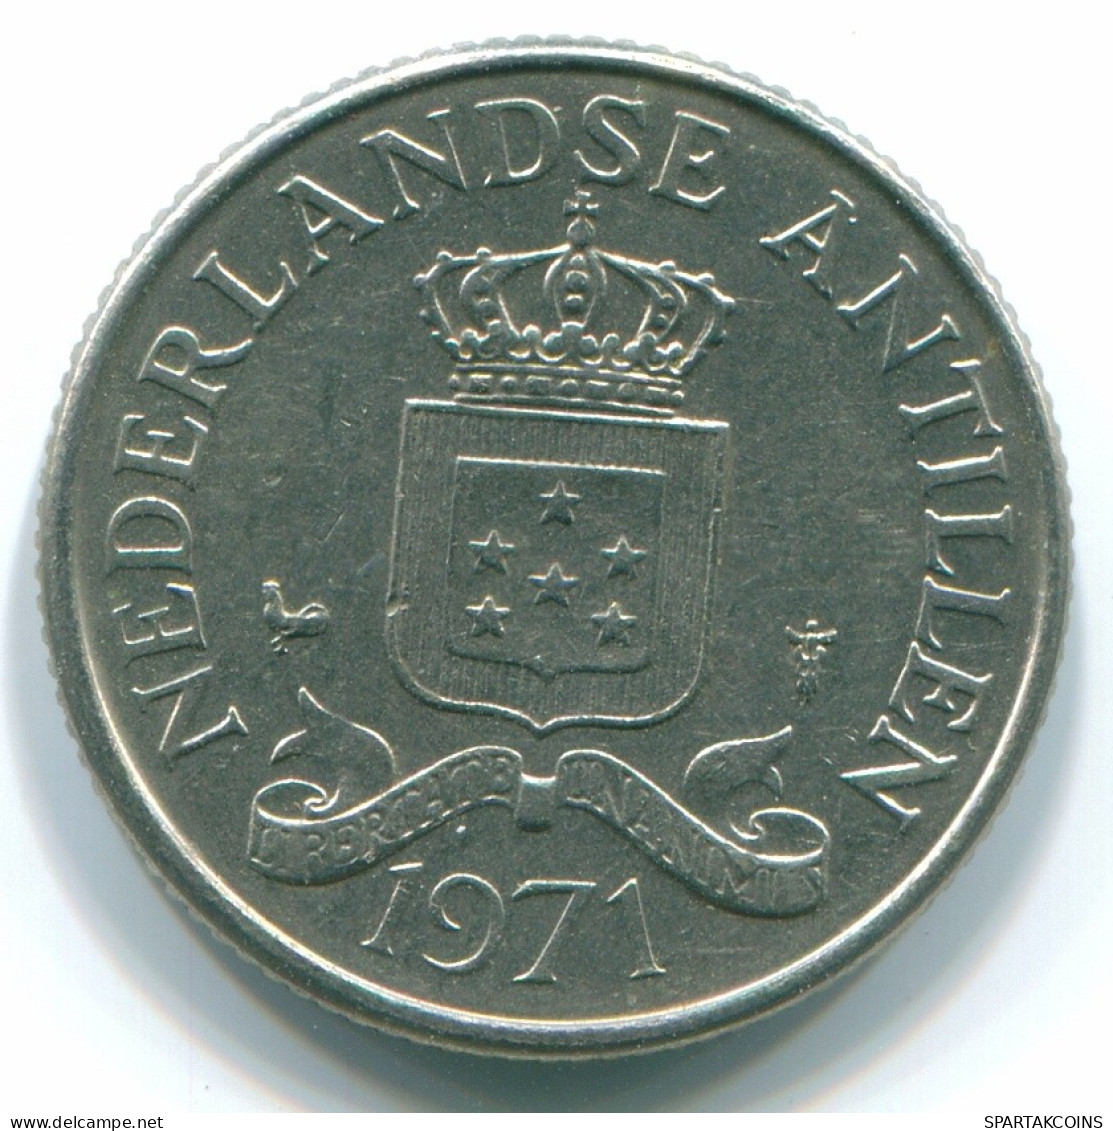 25 CENTS 1971 NIEDERLÄNDISCHE ANTILLEN Nickel Koloniale Münze #S11529.D.A - Niederländische Antillen